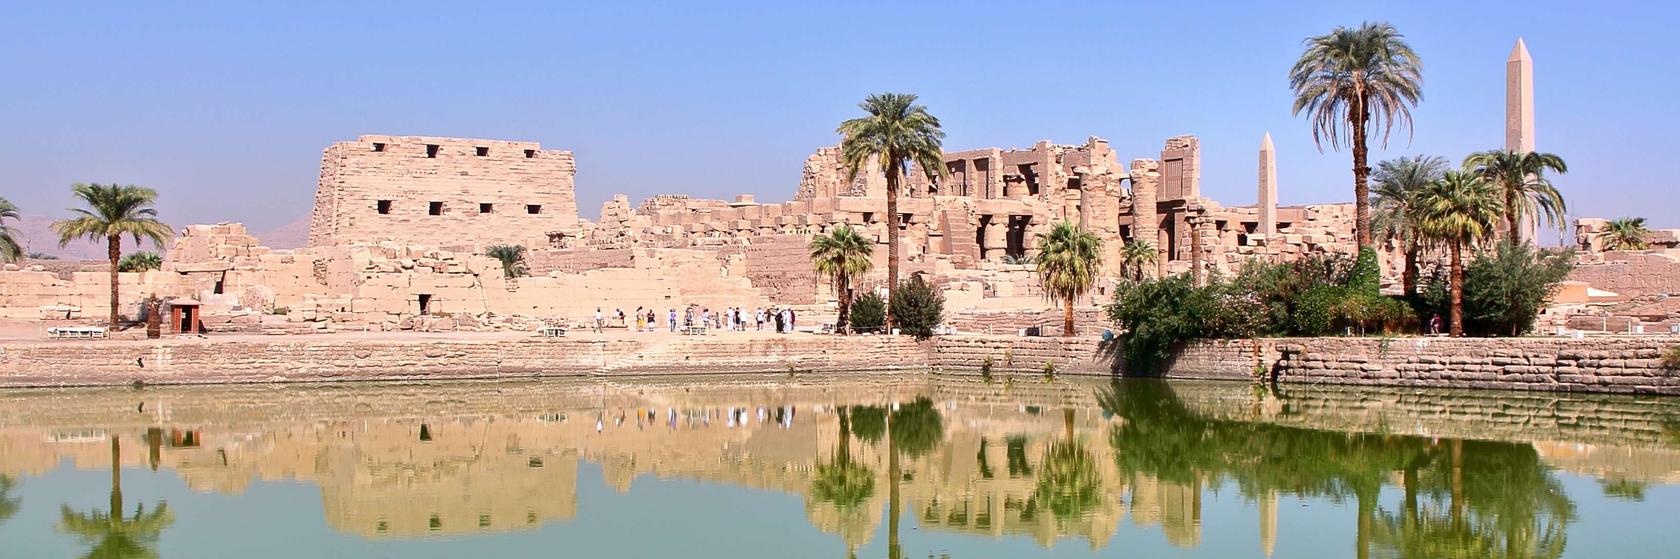 Příroda od Luxoru přes Lybijskou poušť až po Asuán